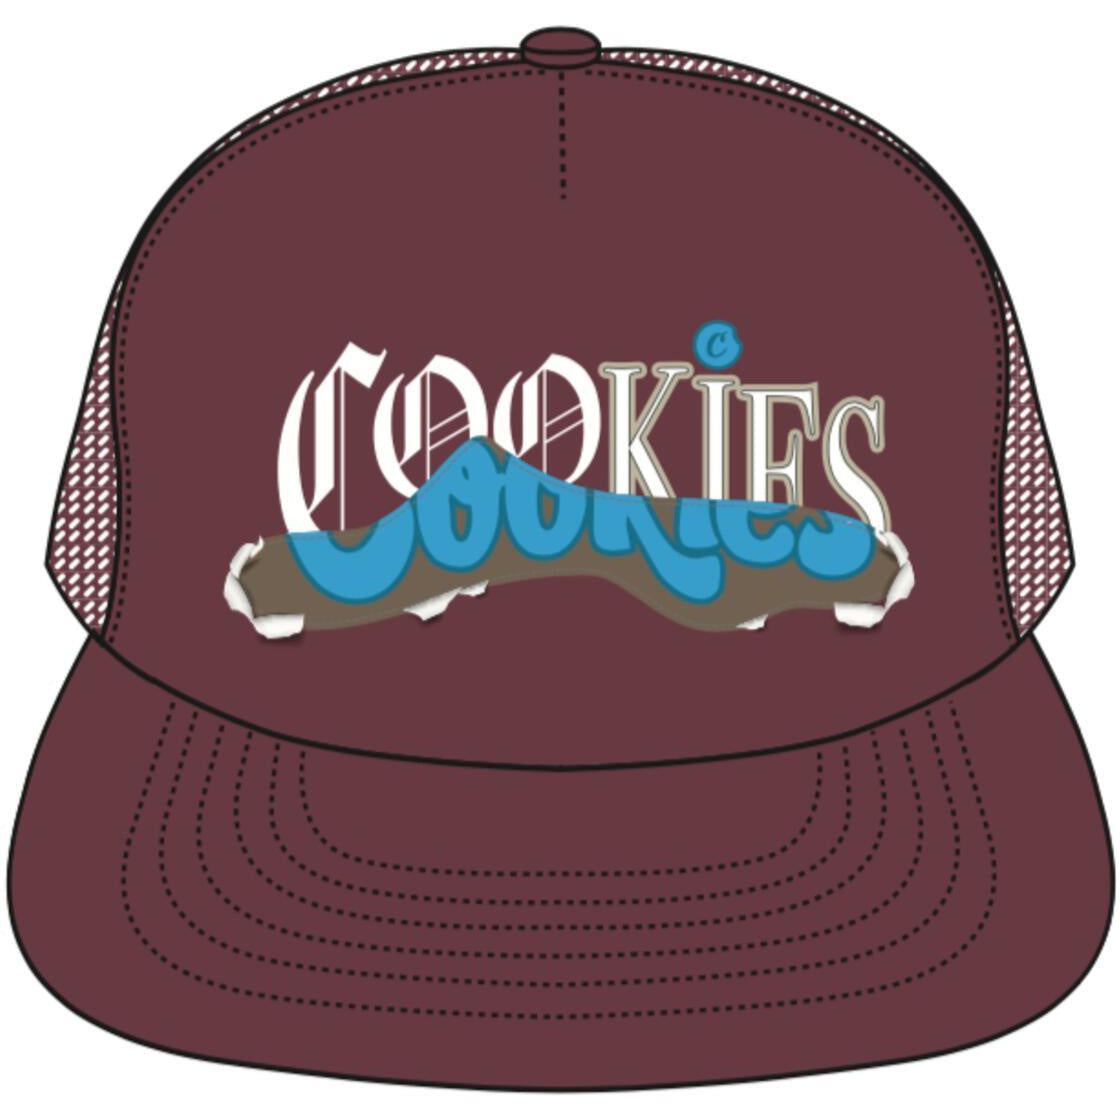 Cookies Upper Echelon Burgundy Trucker Hat (1562X6456)